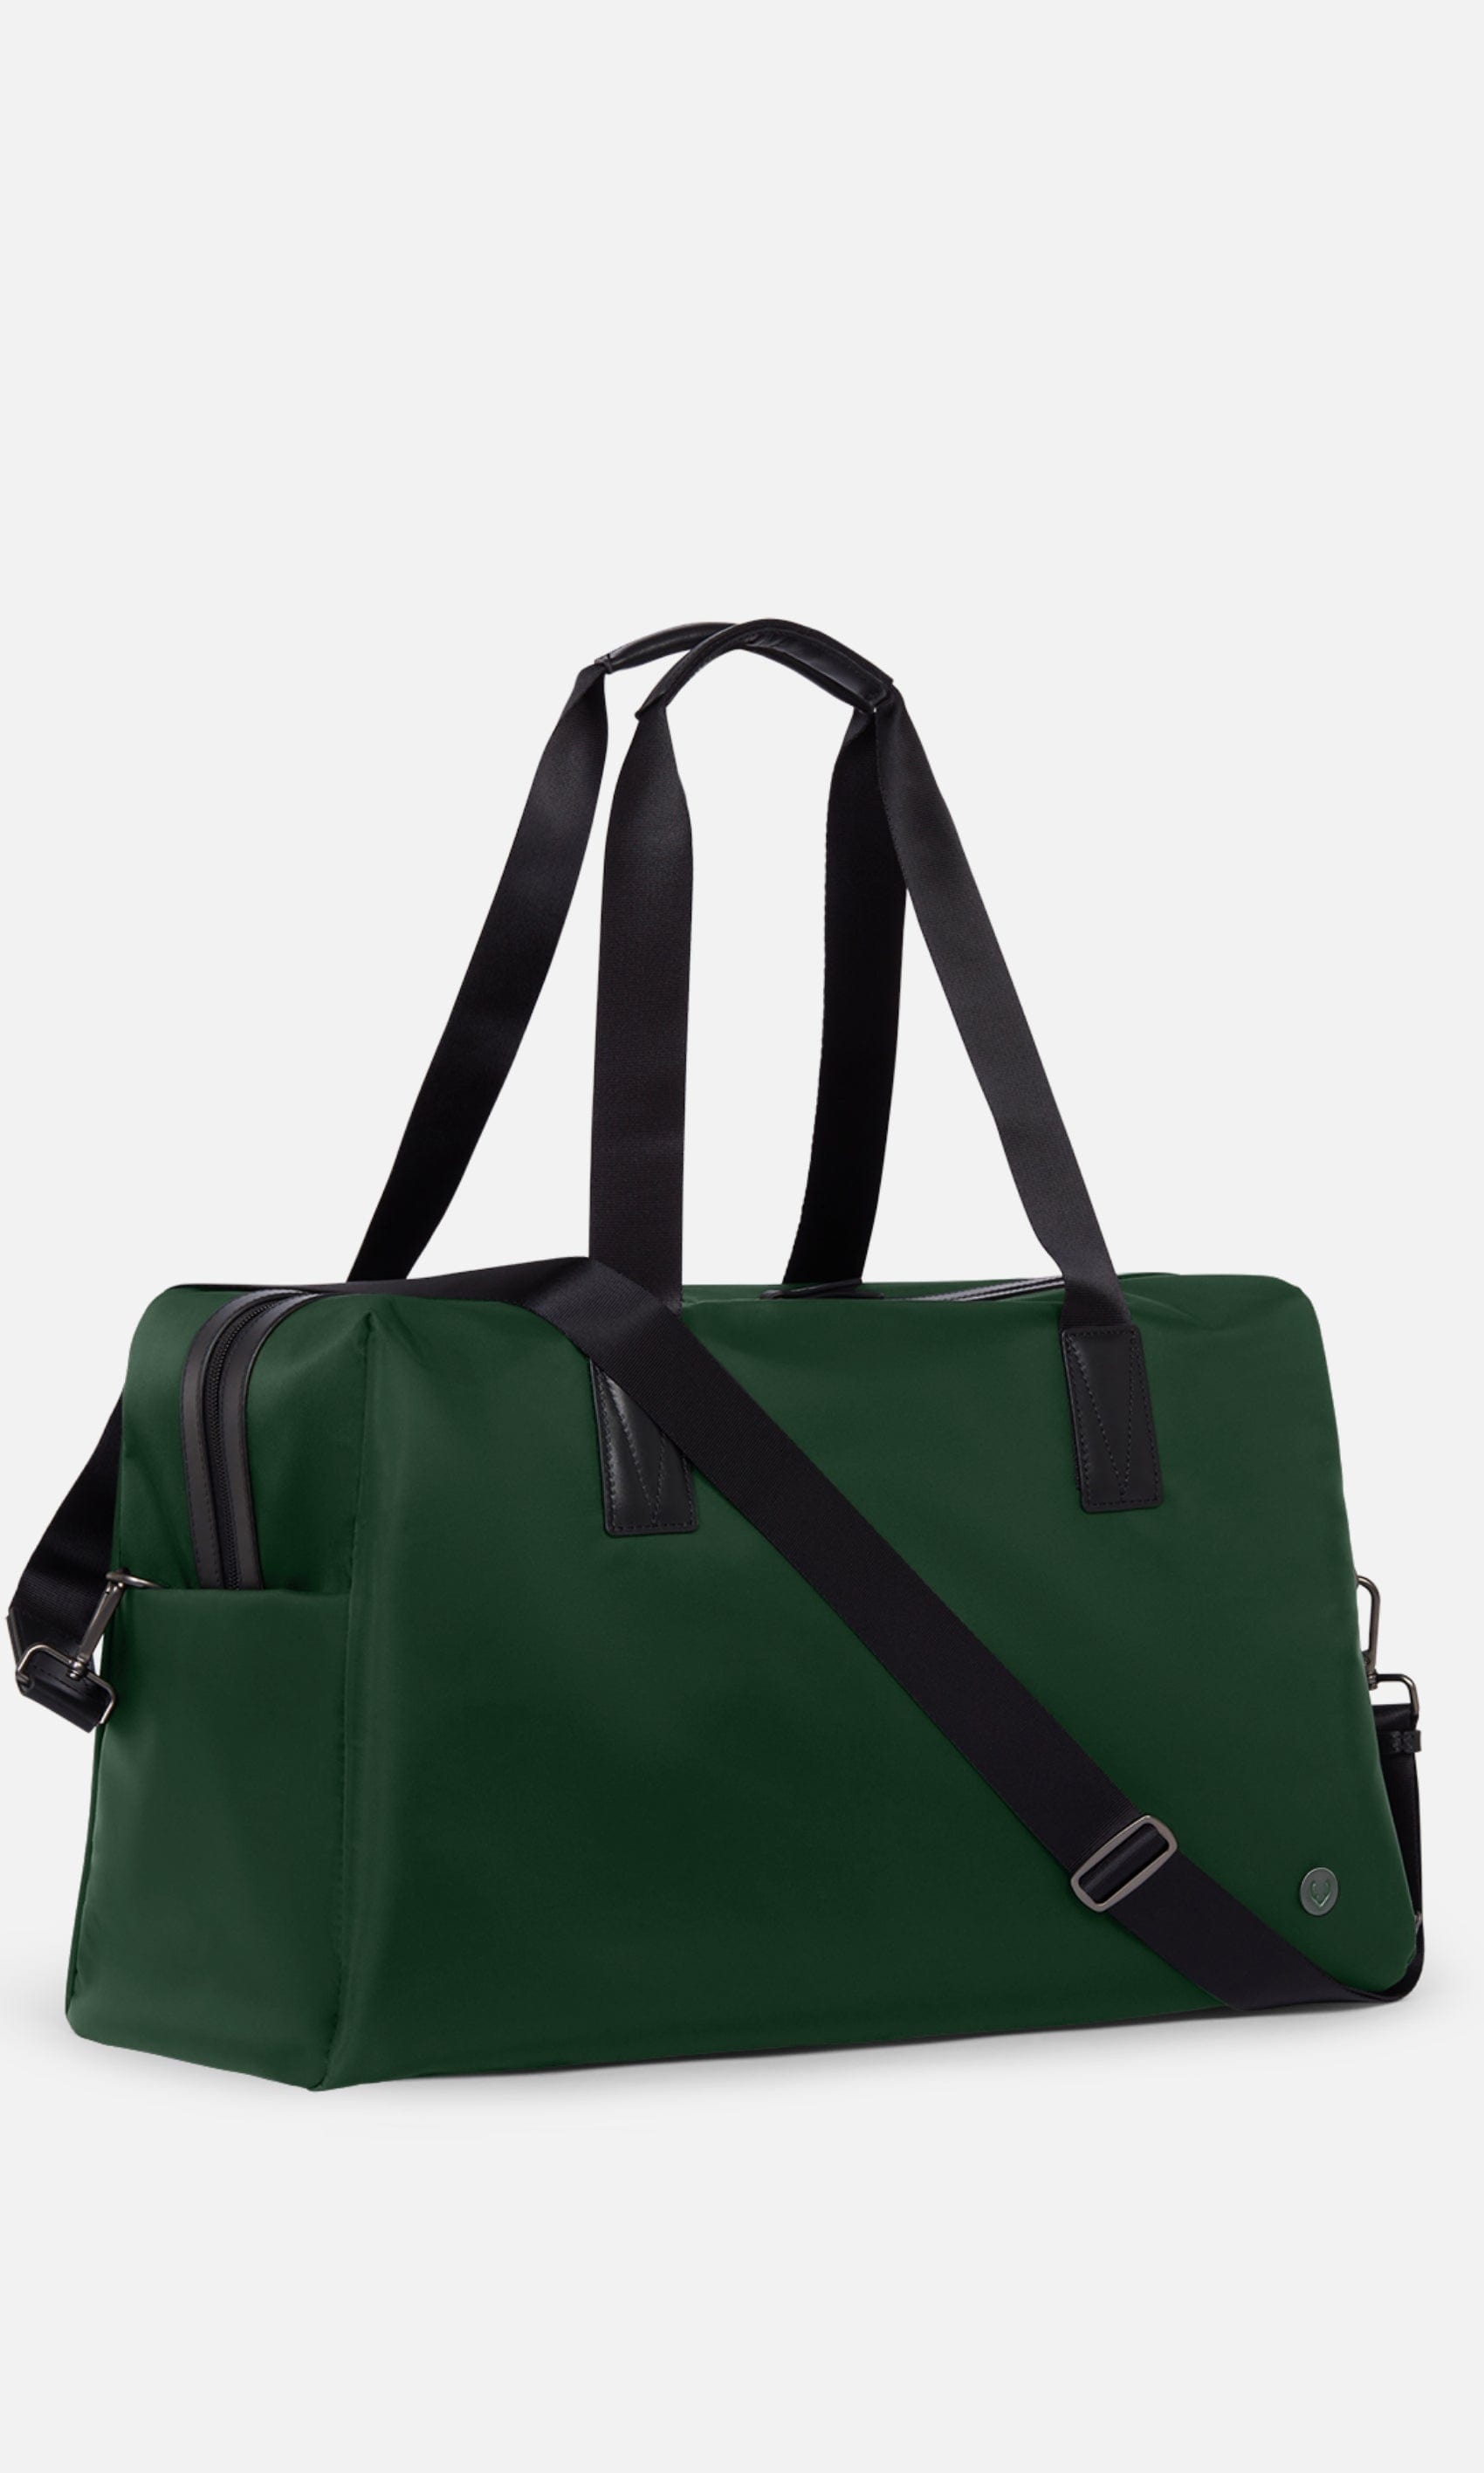 Antler Luggage -  Chelsea weekender in woodland green - Weekend bags Chelsea Weekend Bag Green | Travel Bags | Antler UK